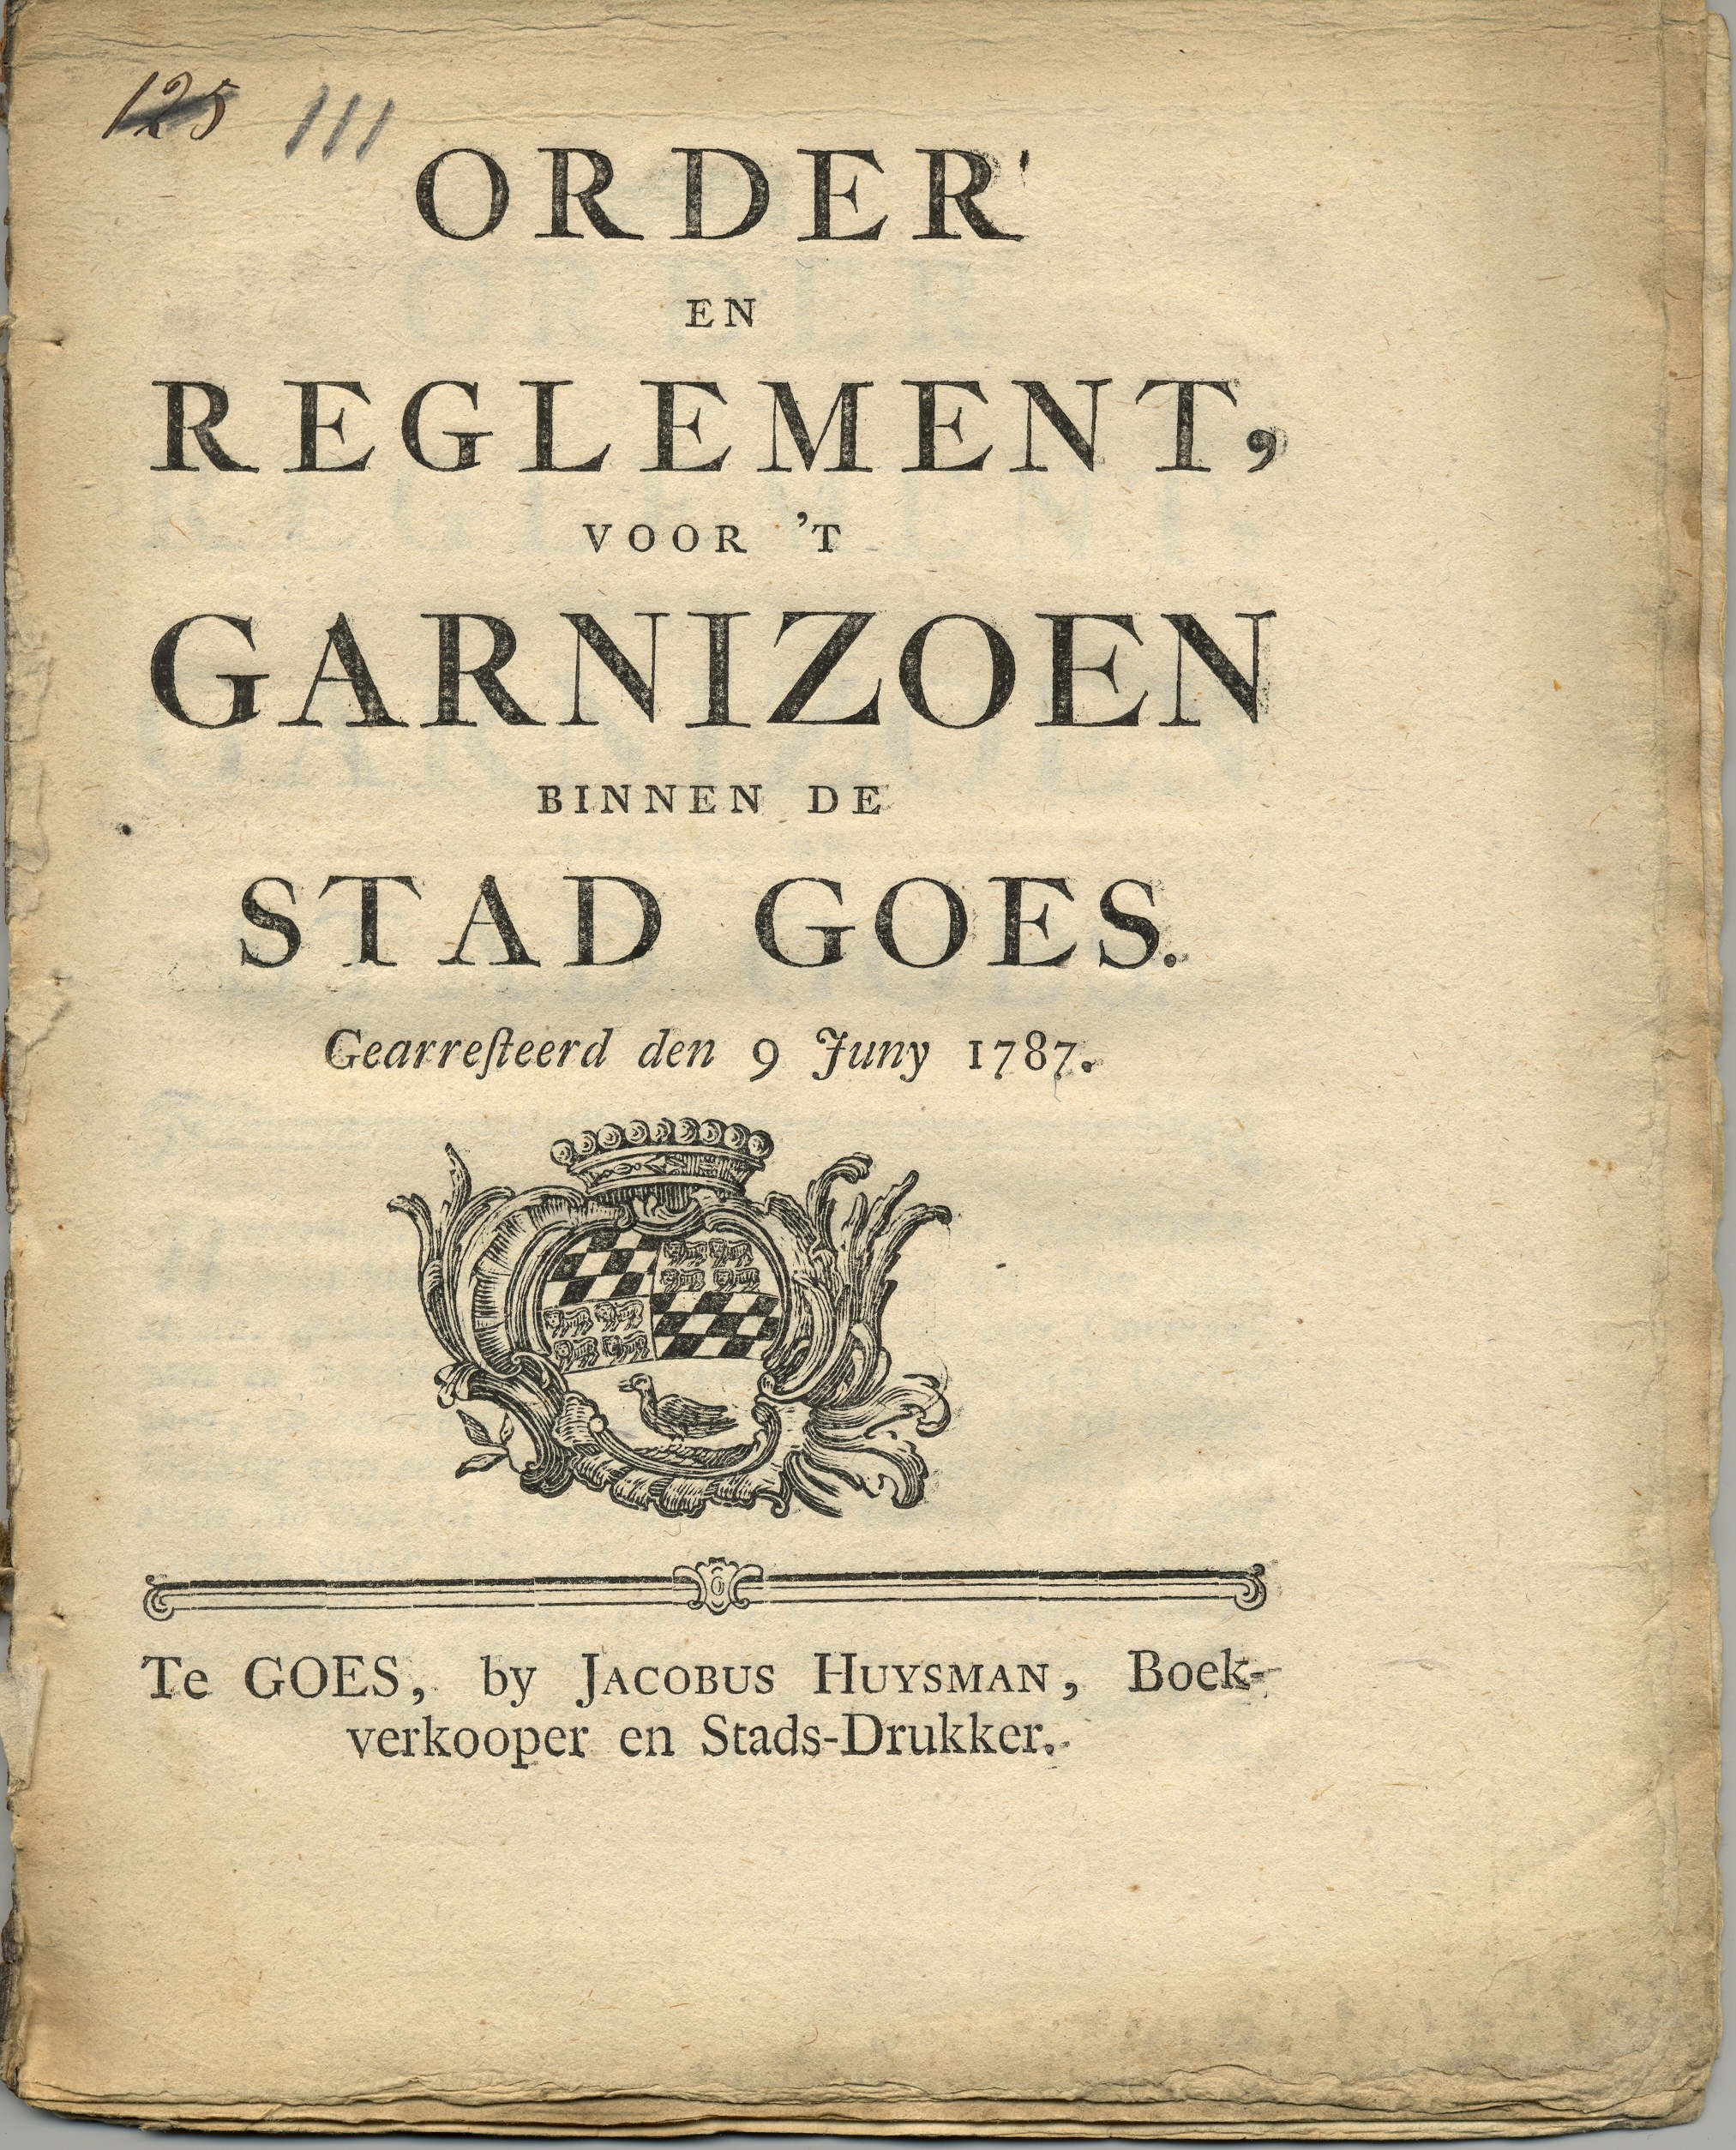 Reglement voor het garnizoen, 1787.